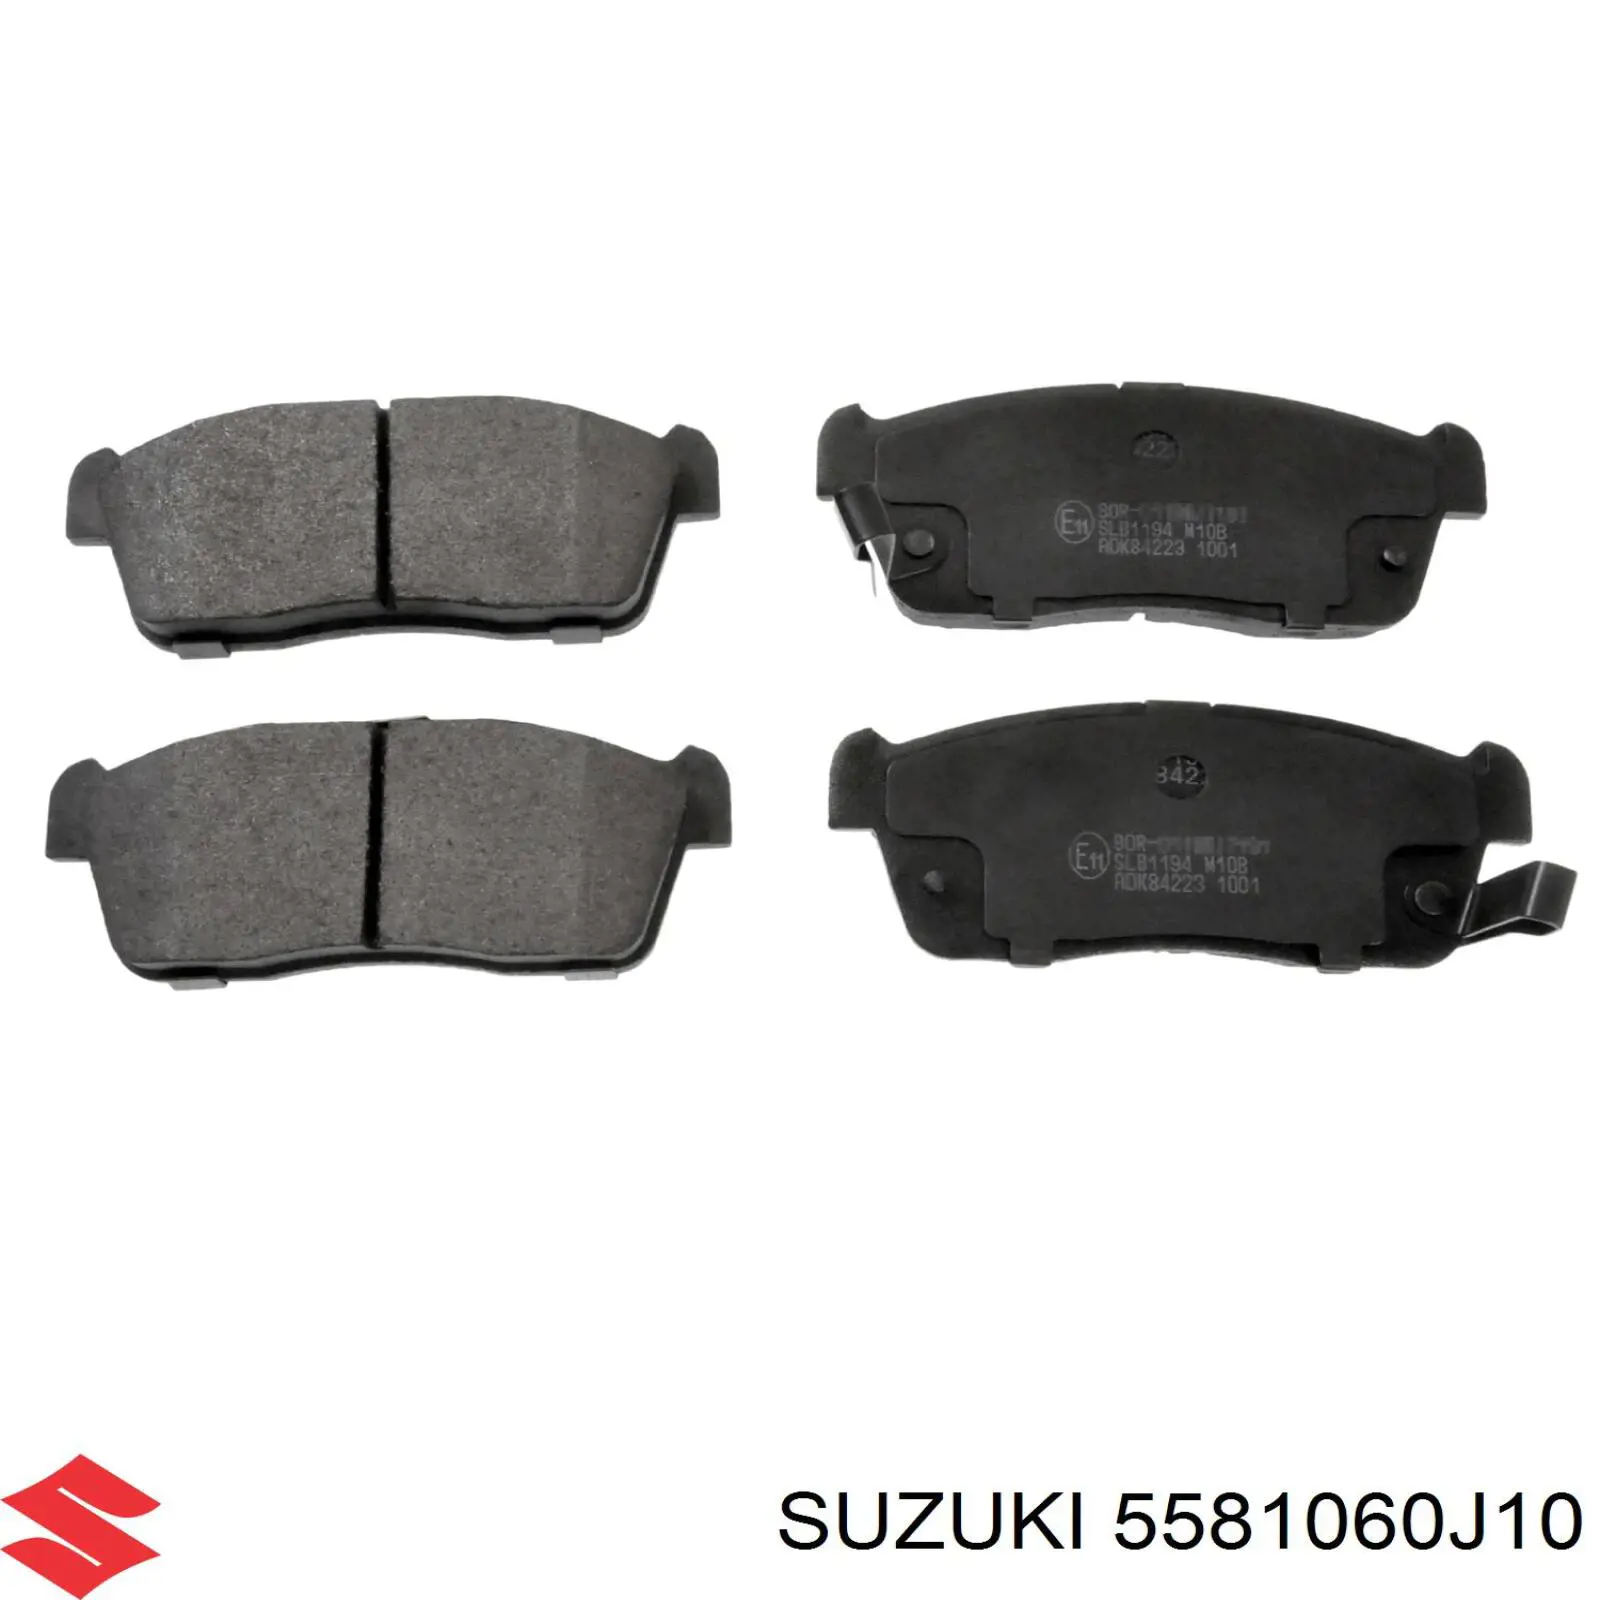 5581060J10 Suzuki колодки тормозные передние дисковые